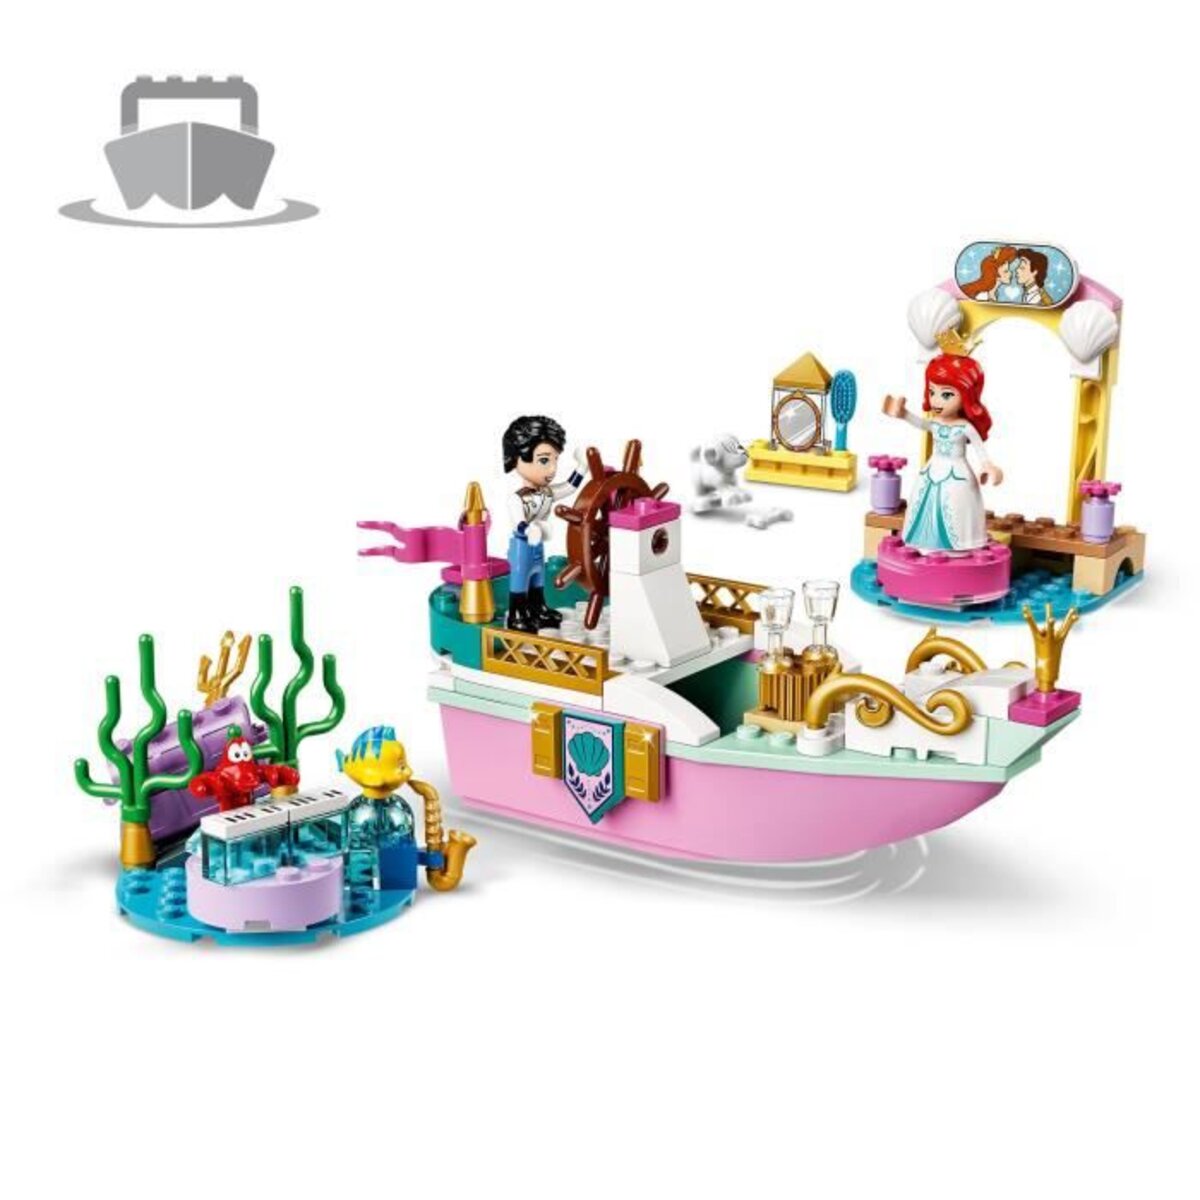 LEGO Disney Princess 43191 Le bateau de mariage d'Ariel - La Petite Sirène  